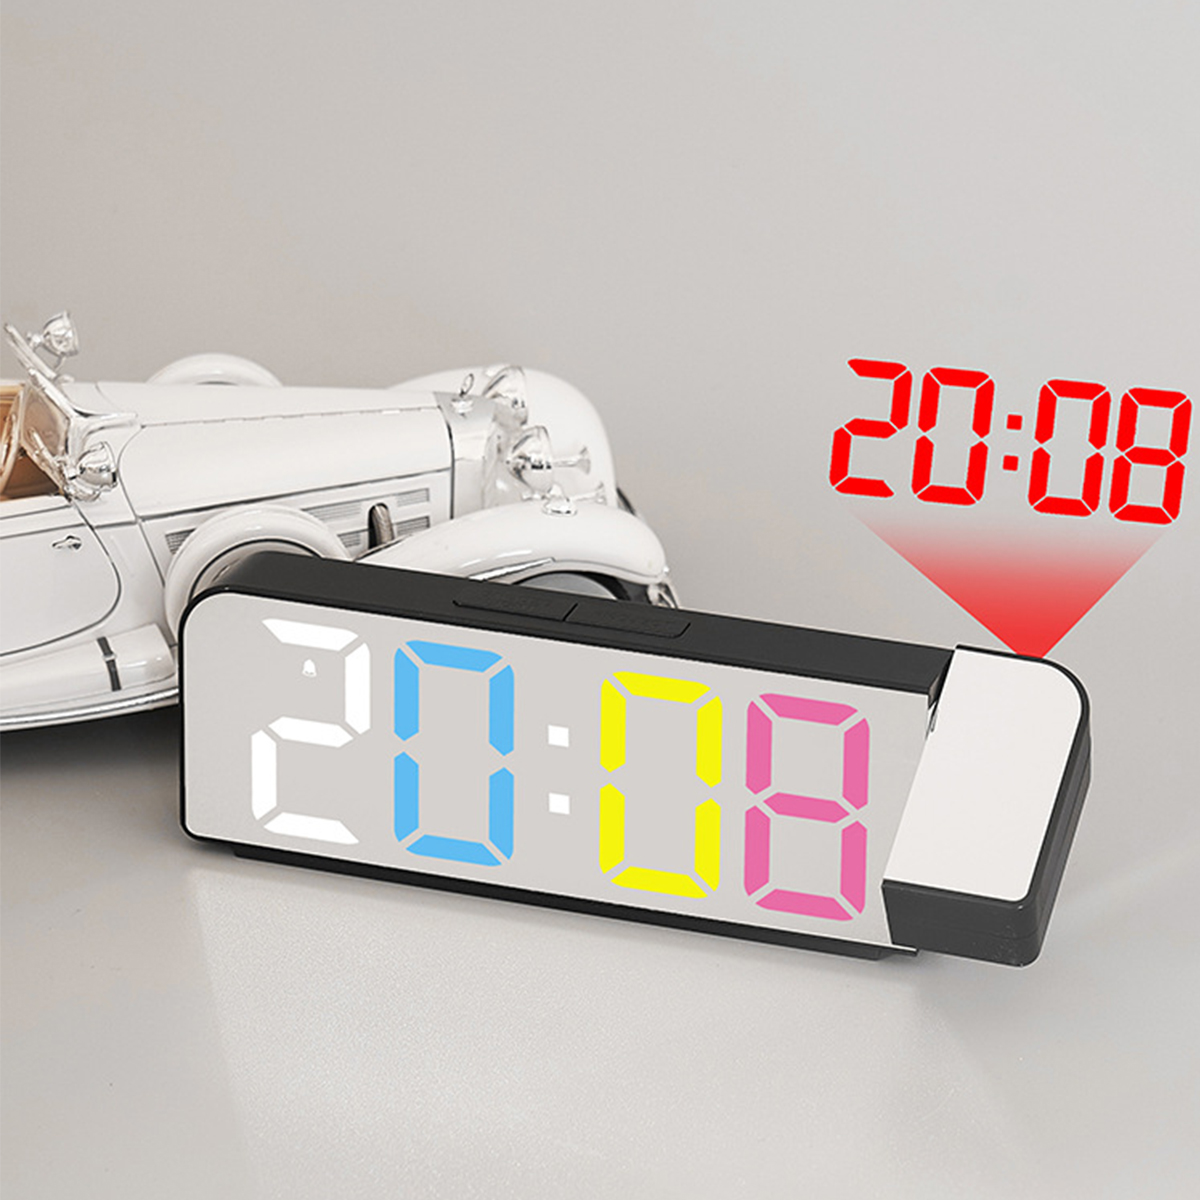 BRIGHTAKE Projektionswecker LED-Anzeige Temperaturanzeige Uhr und mit